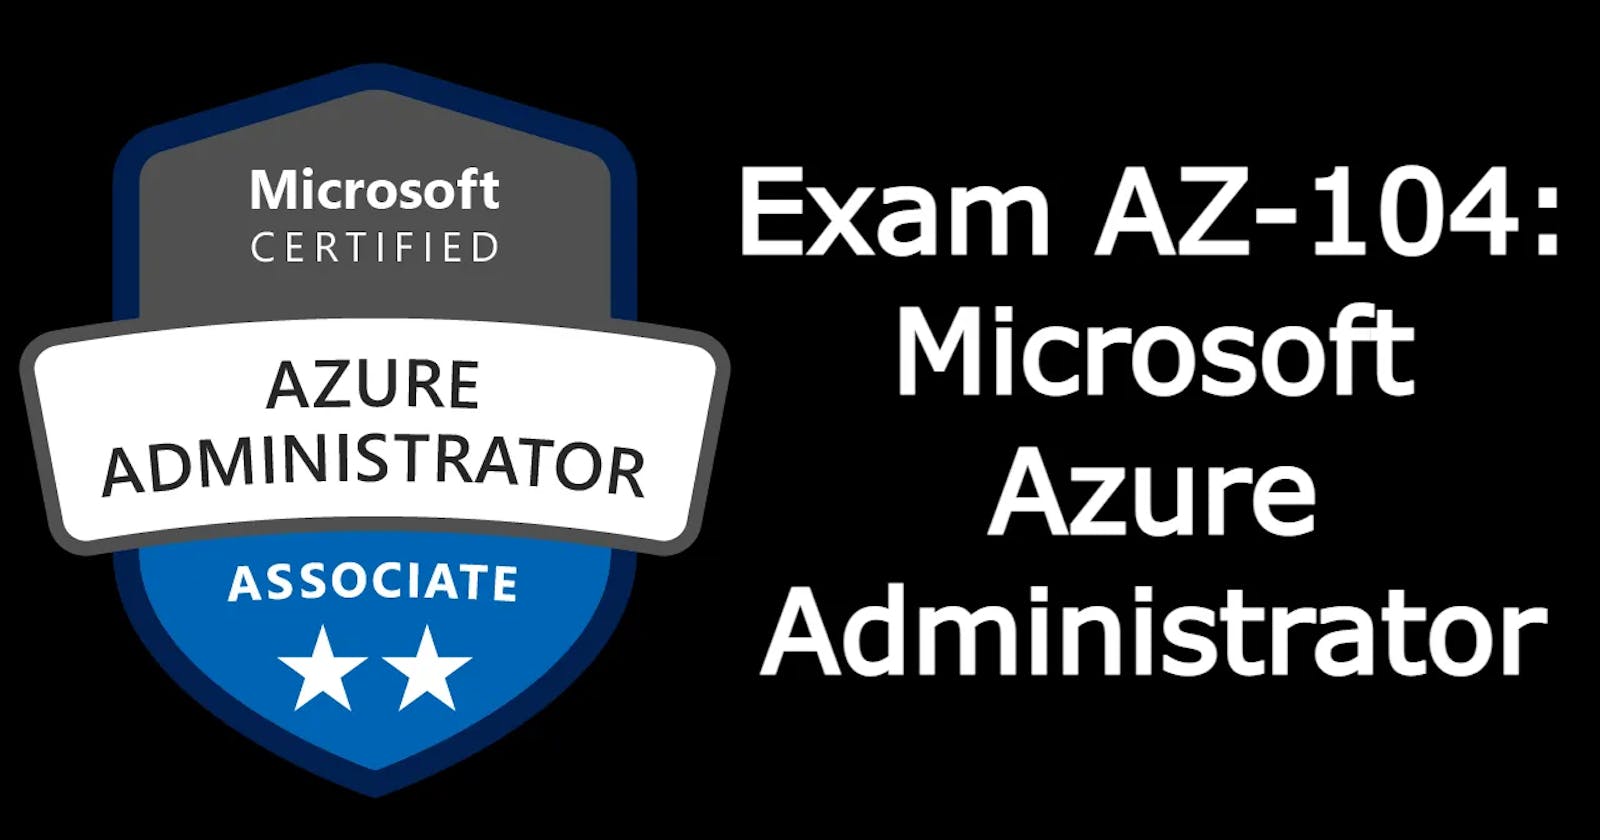 Exam AZ-104 Azure Administrator Prep Guide